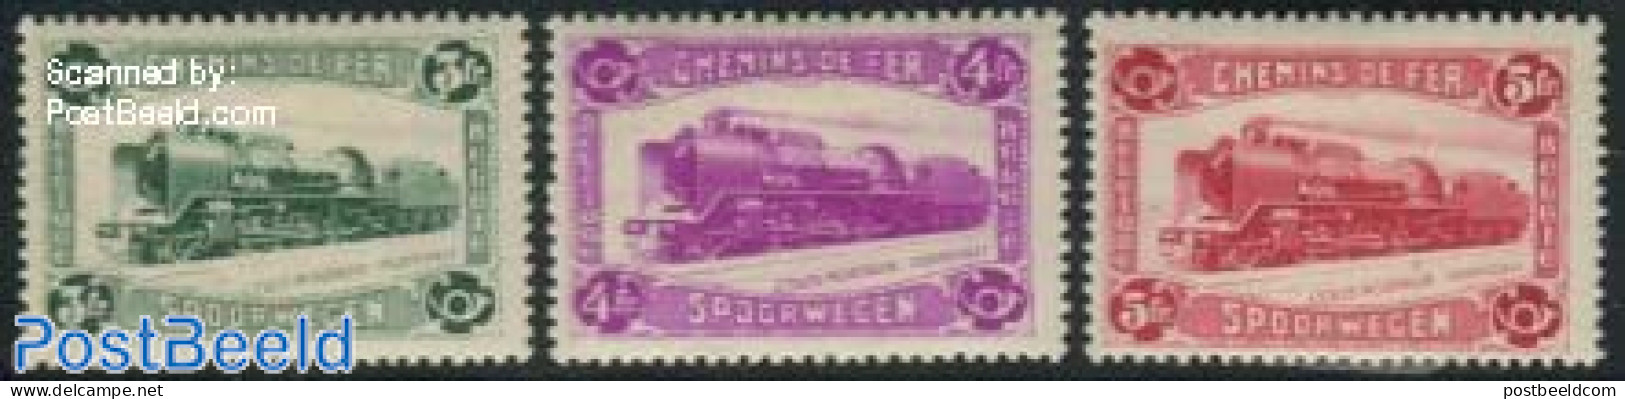 Belgium 1934 Parcel Stamps 3v, Unused (hinged), Transport - Railways - Ungebraucht